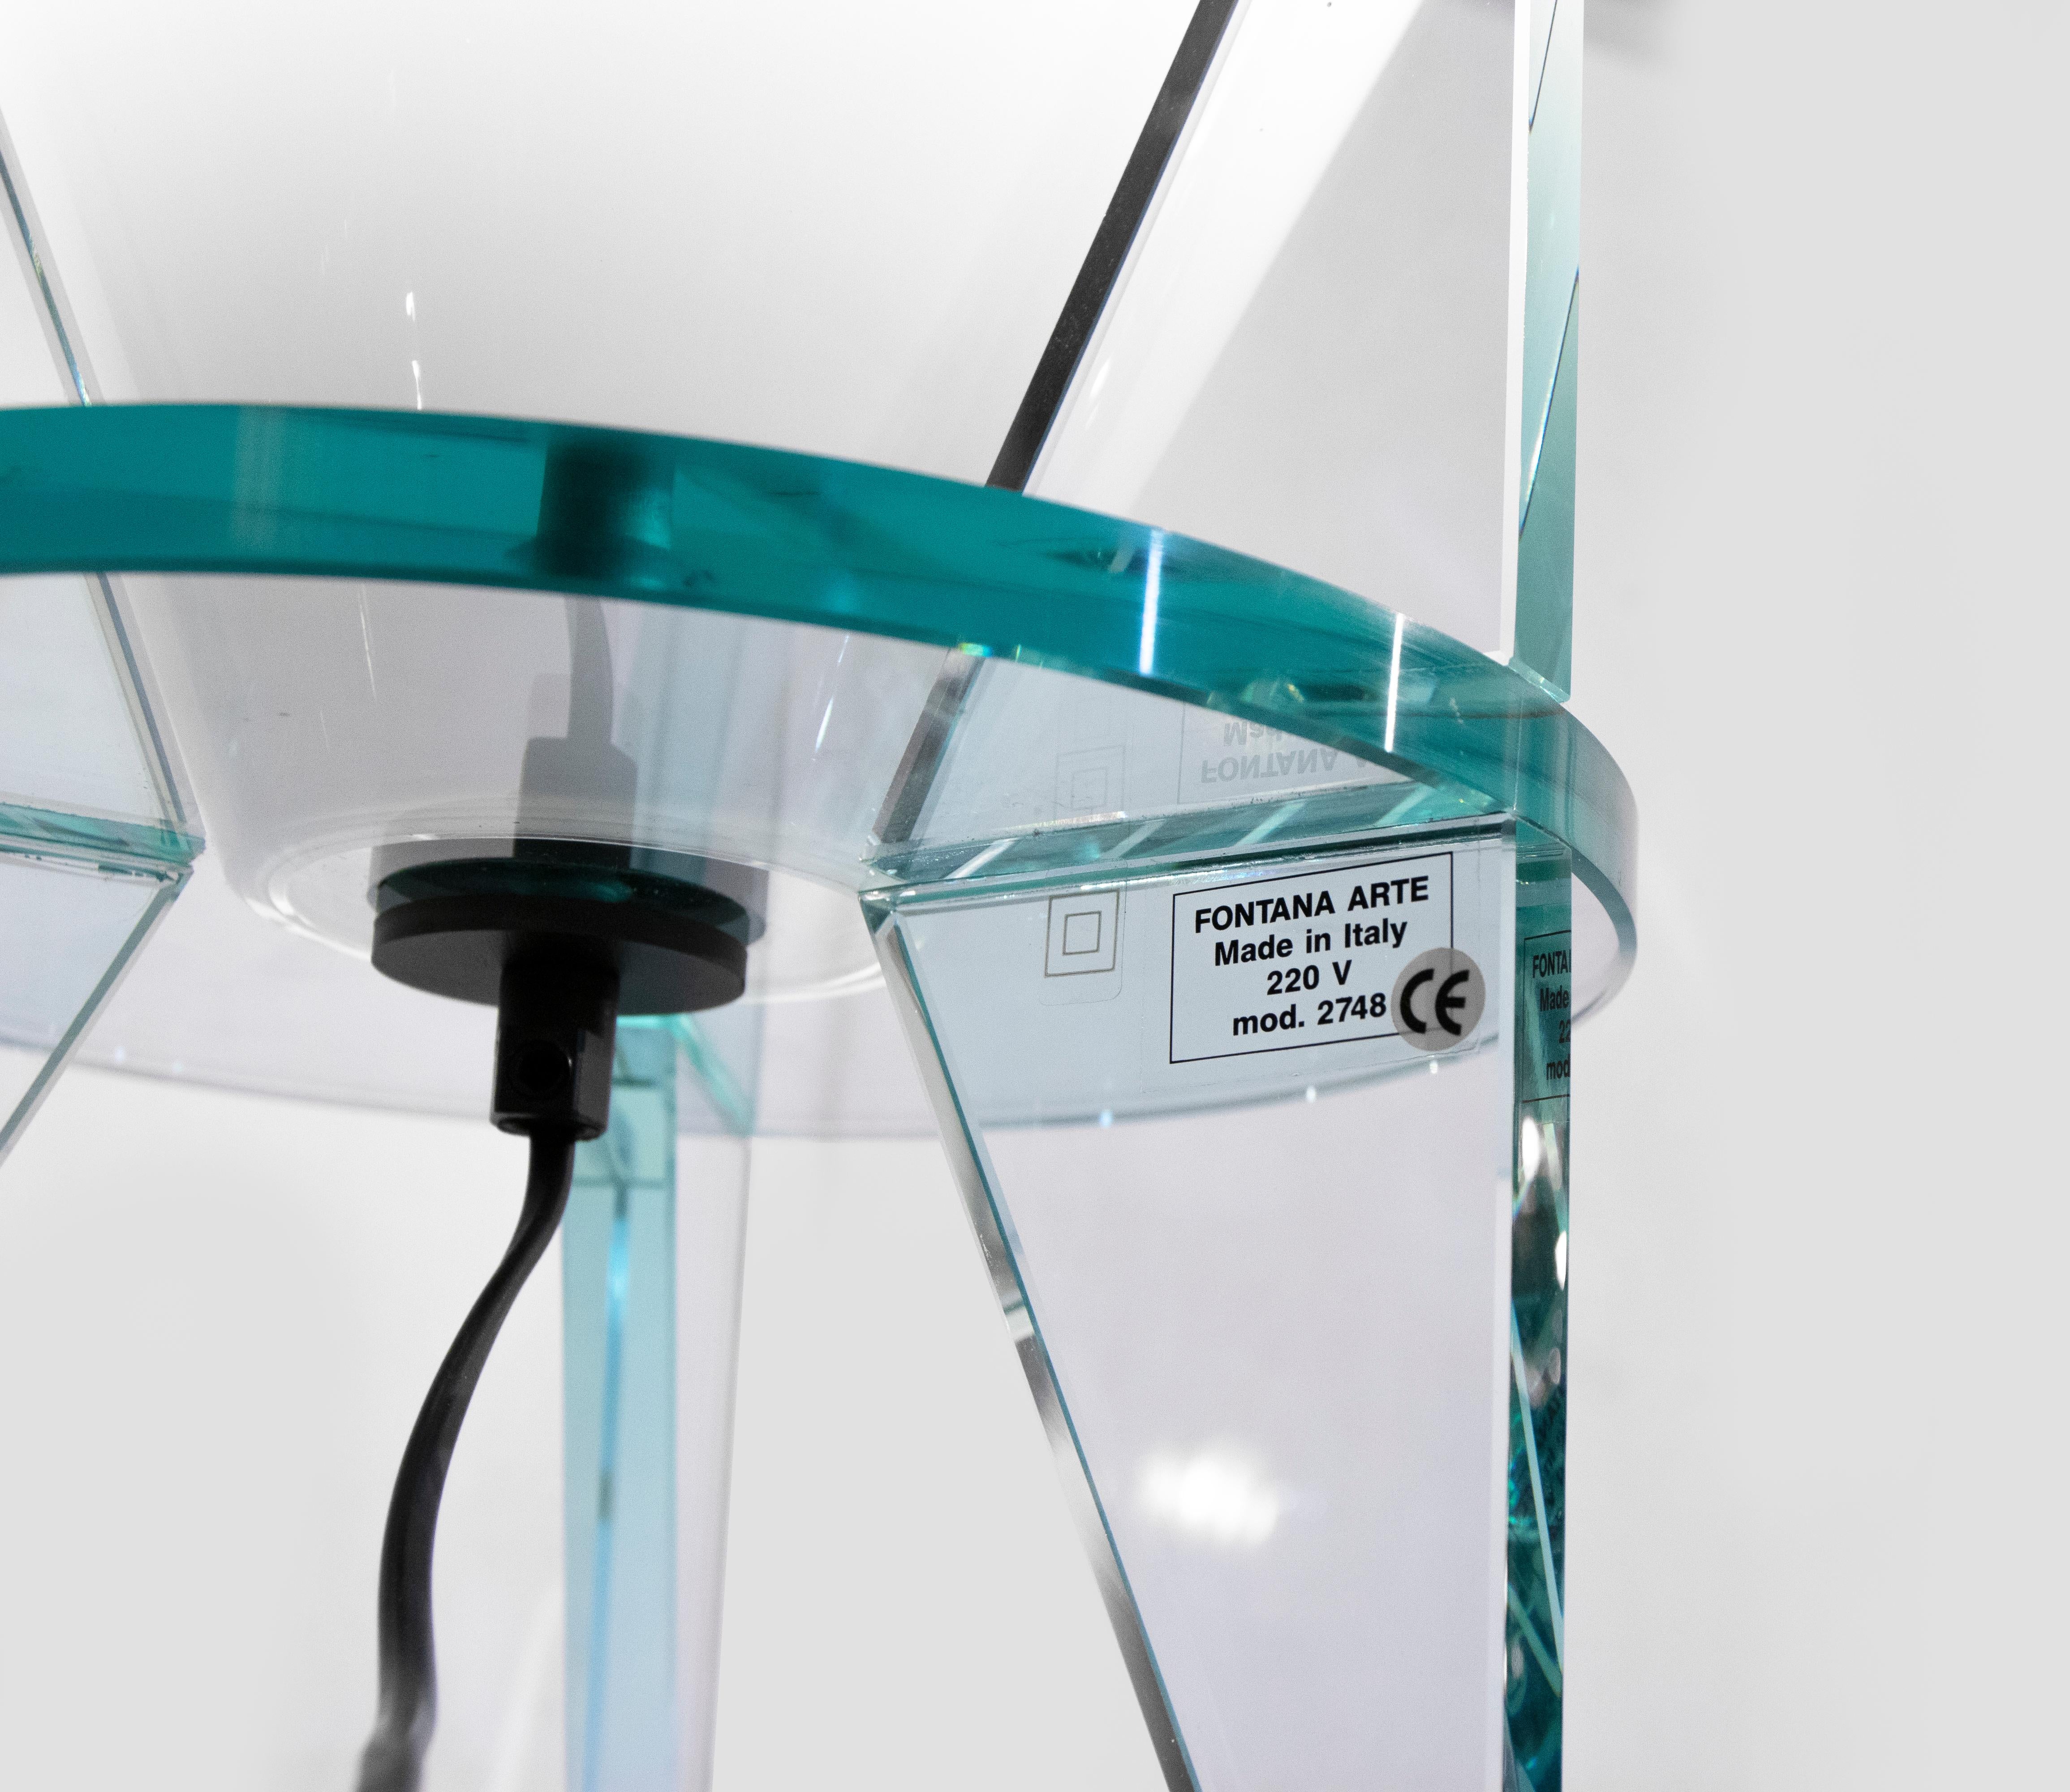 La lampe de table Otero Modèle 2748 est une lampe élégante conçue et créée par le designer italien Rodolfo Dordoni (Milan, 1954) dans les années 1984.

Créé pour Fontana Arte, Italie. 

Dimensions totales : H 57 x 40 x 40 cm.

Cristal biseauté